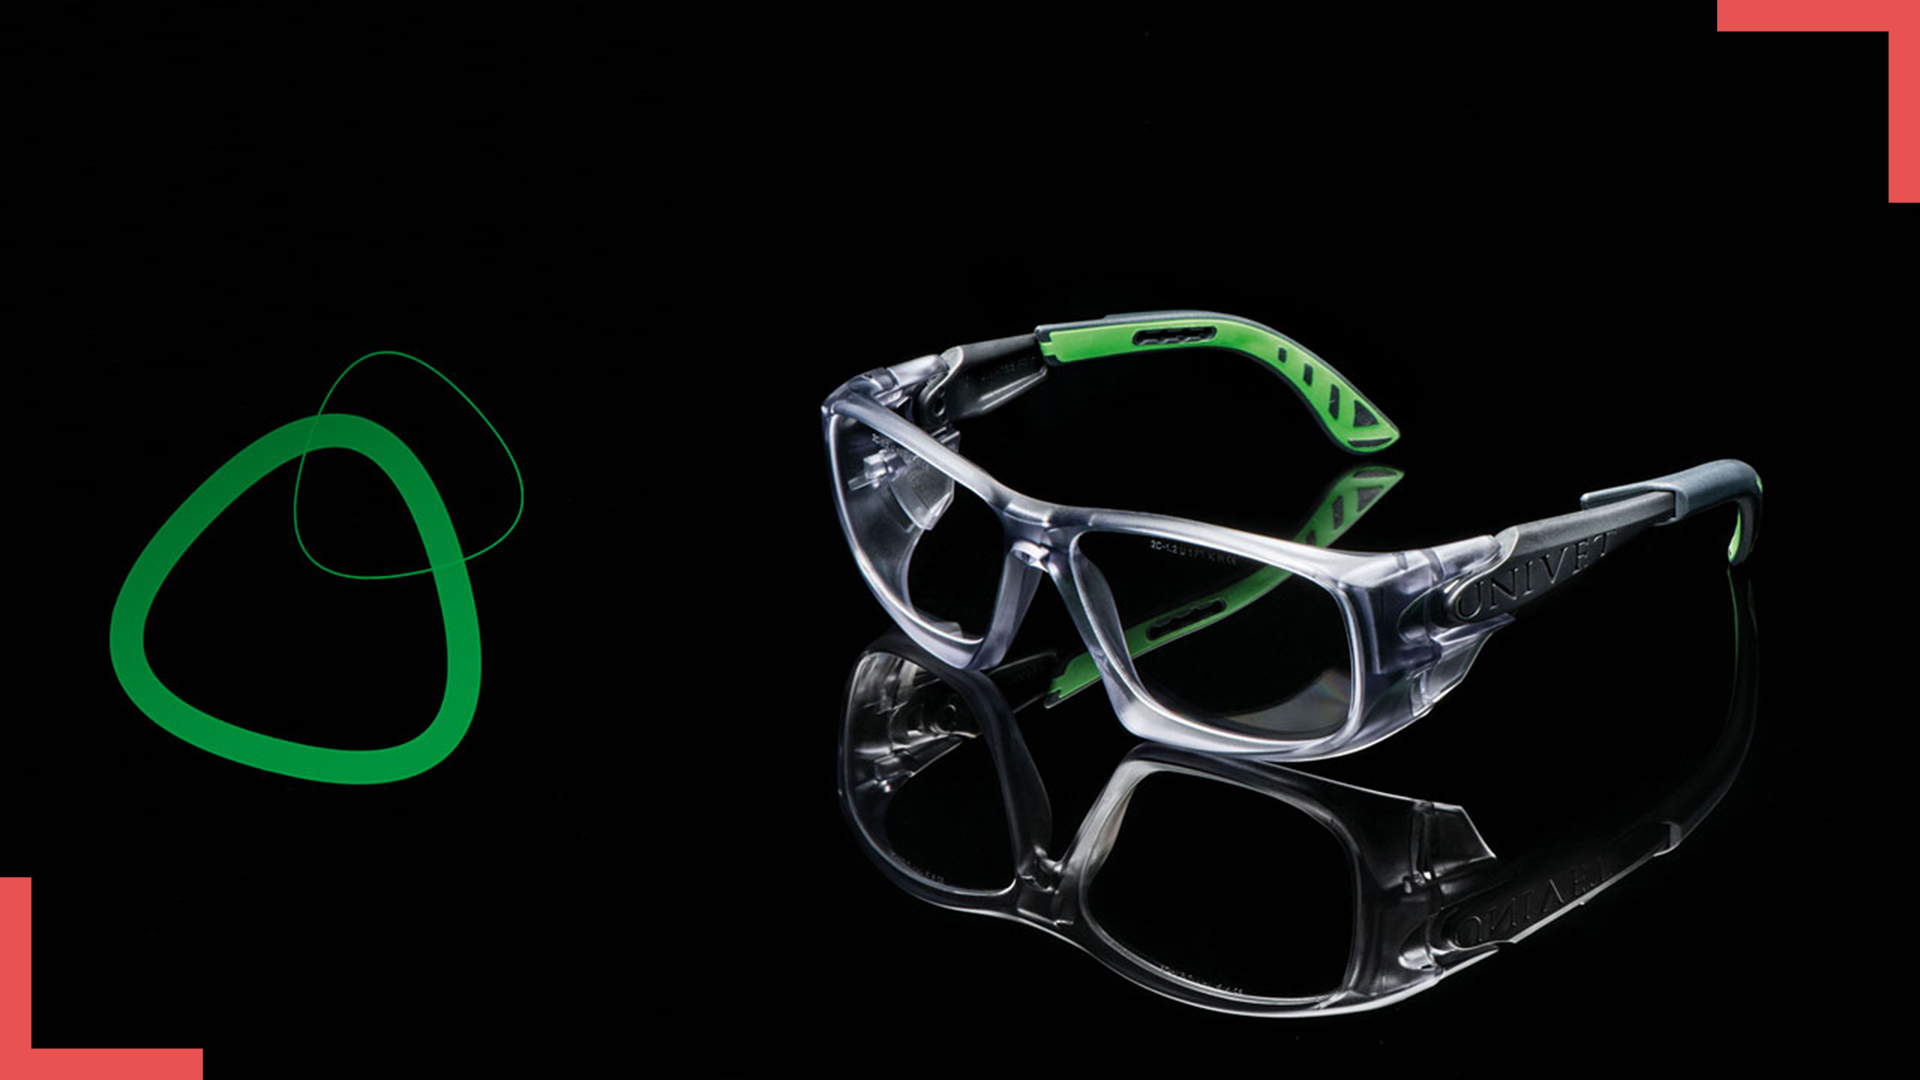 Protection à la vue par lunettes à verres correcteurs, Contact VERRE2VUE